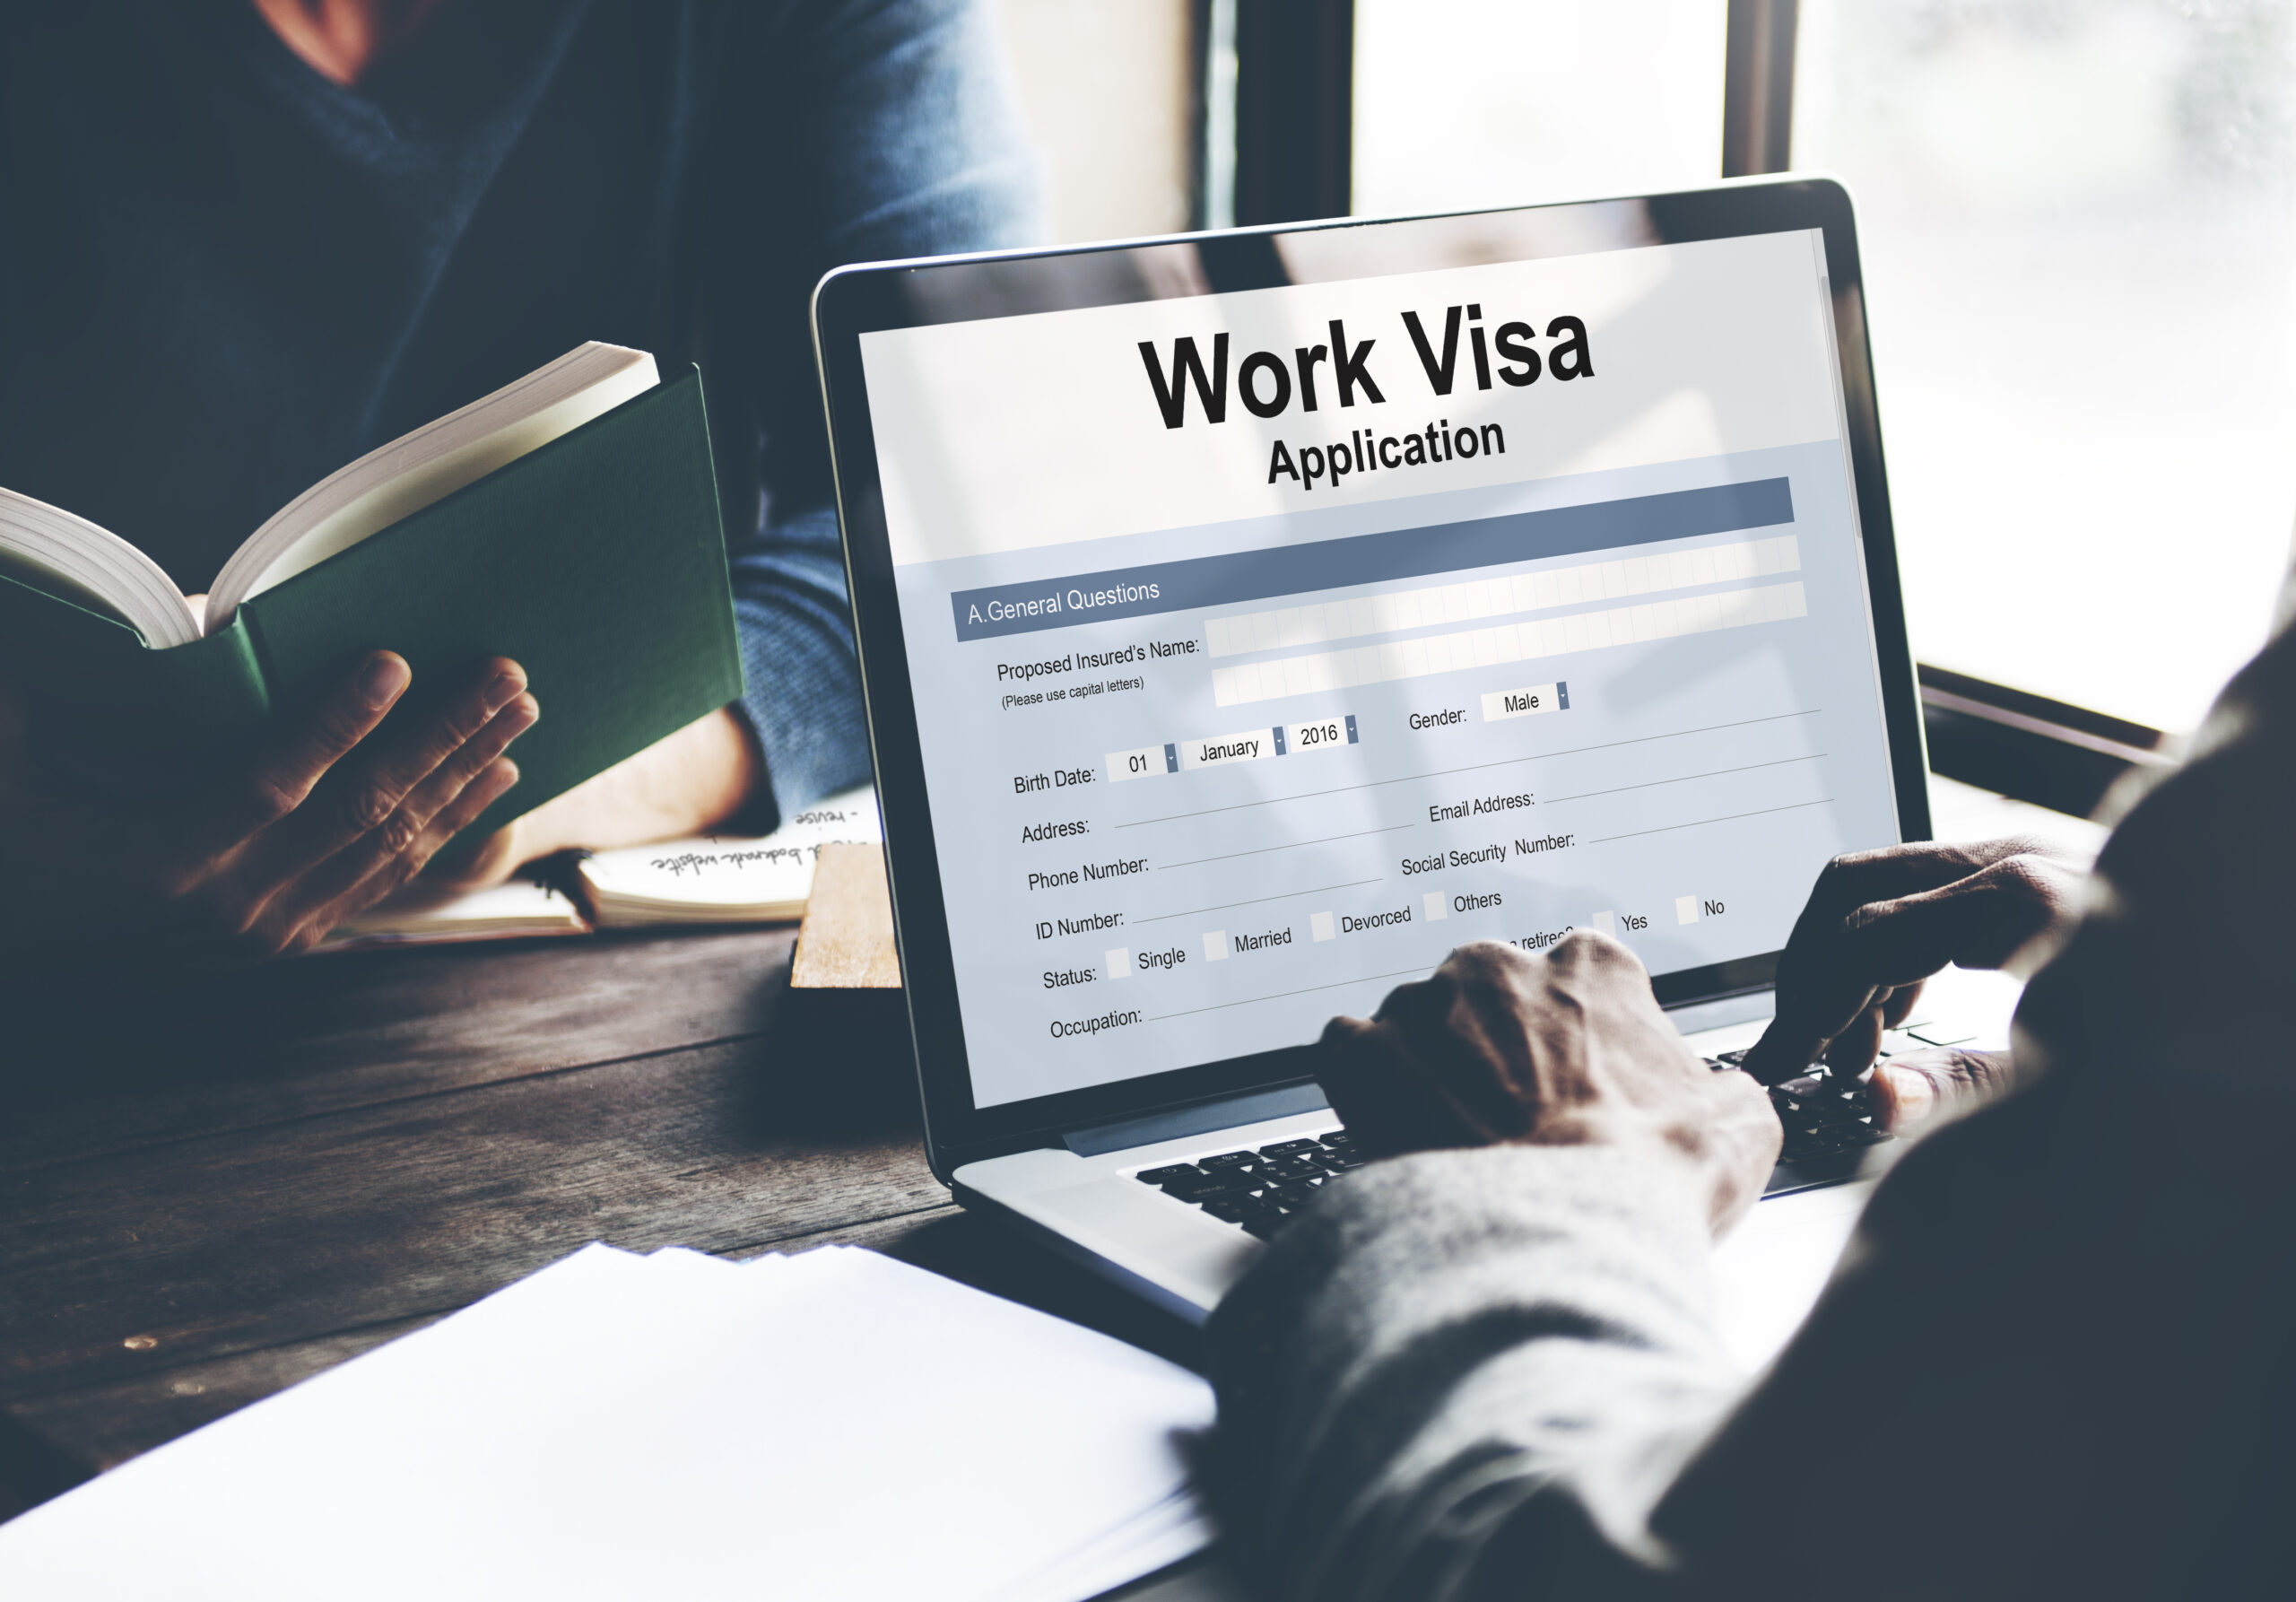 Анкета на рабочую визу в США, открытая на ноутбуке